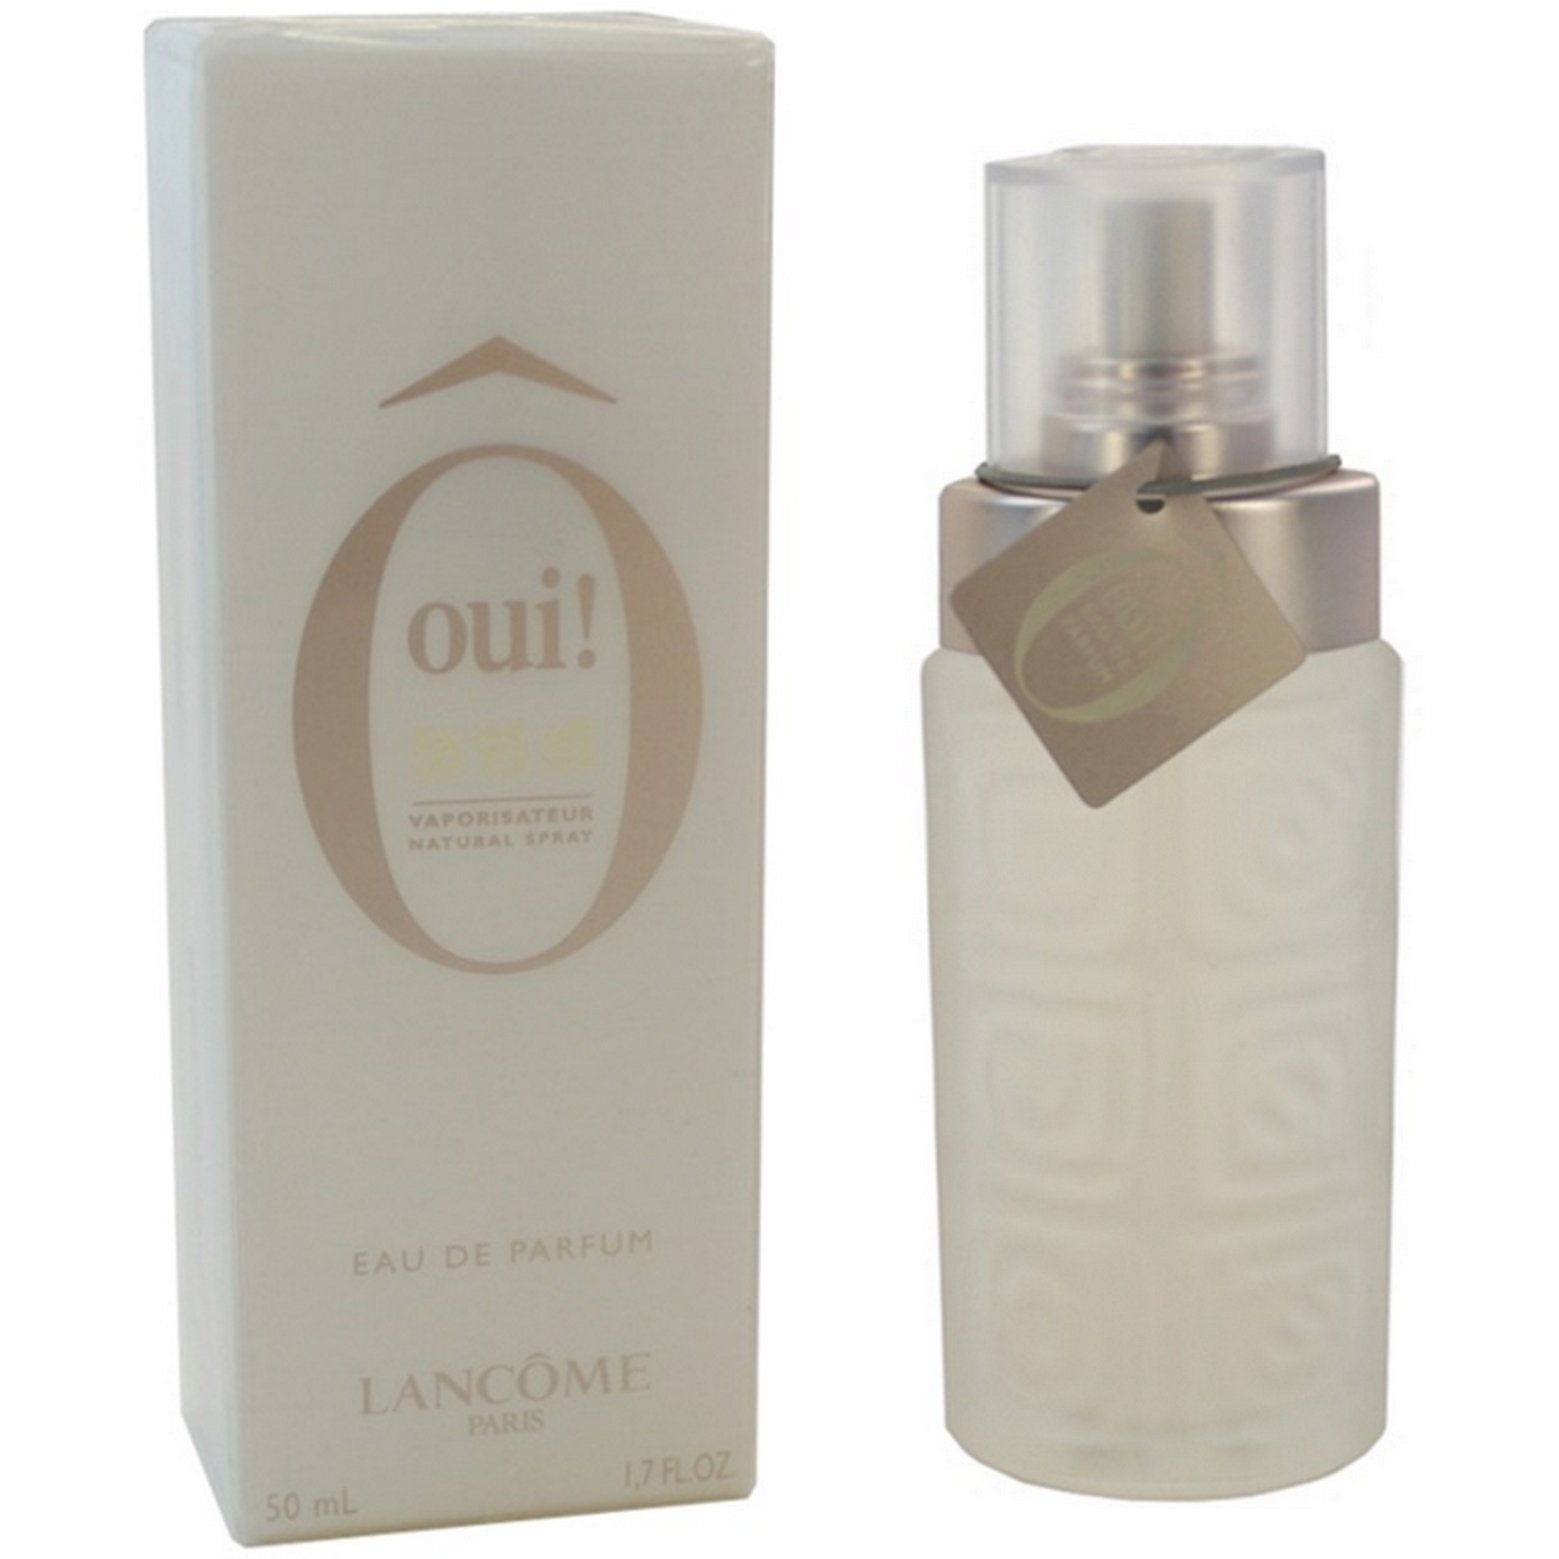 LANCOME Eau de Parfum Lancome Ô oui! pour Femme Eau de Parfum Spray 50 ml